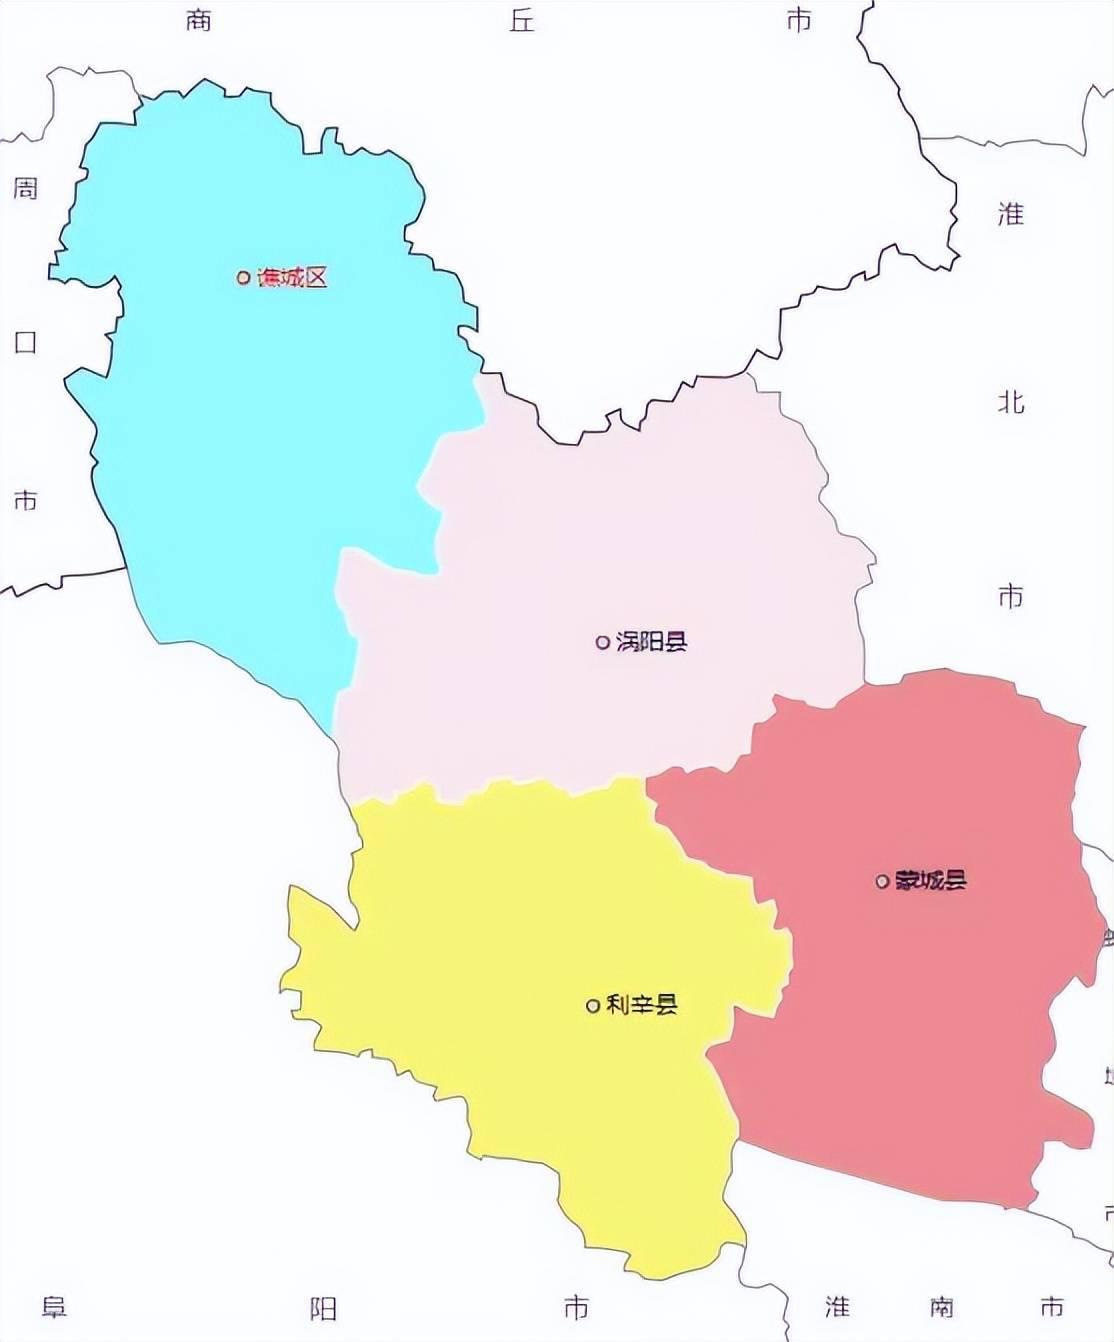 亳州市的区划调整,安徽省的重要城市之一,为何有4个区县?